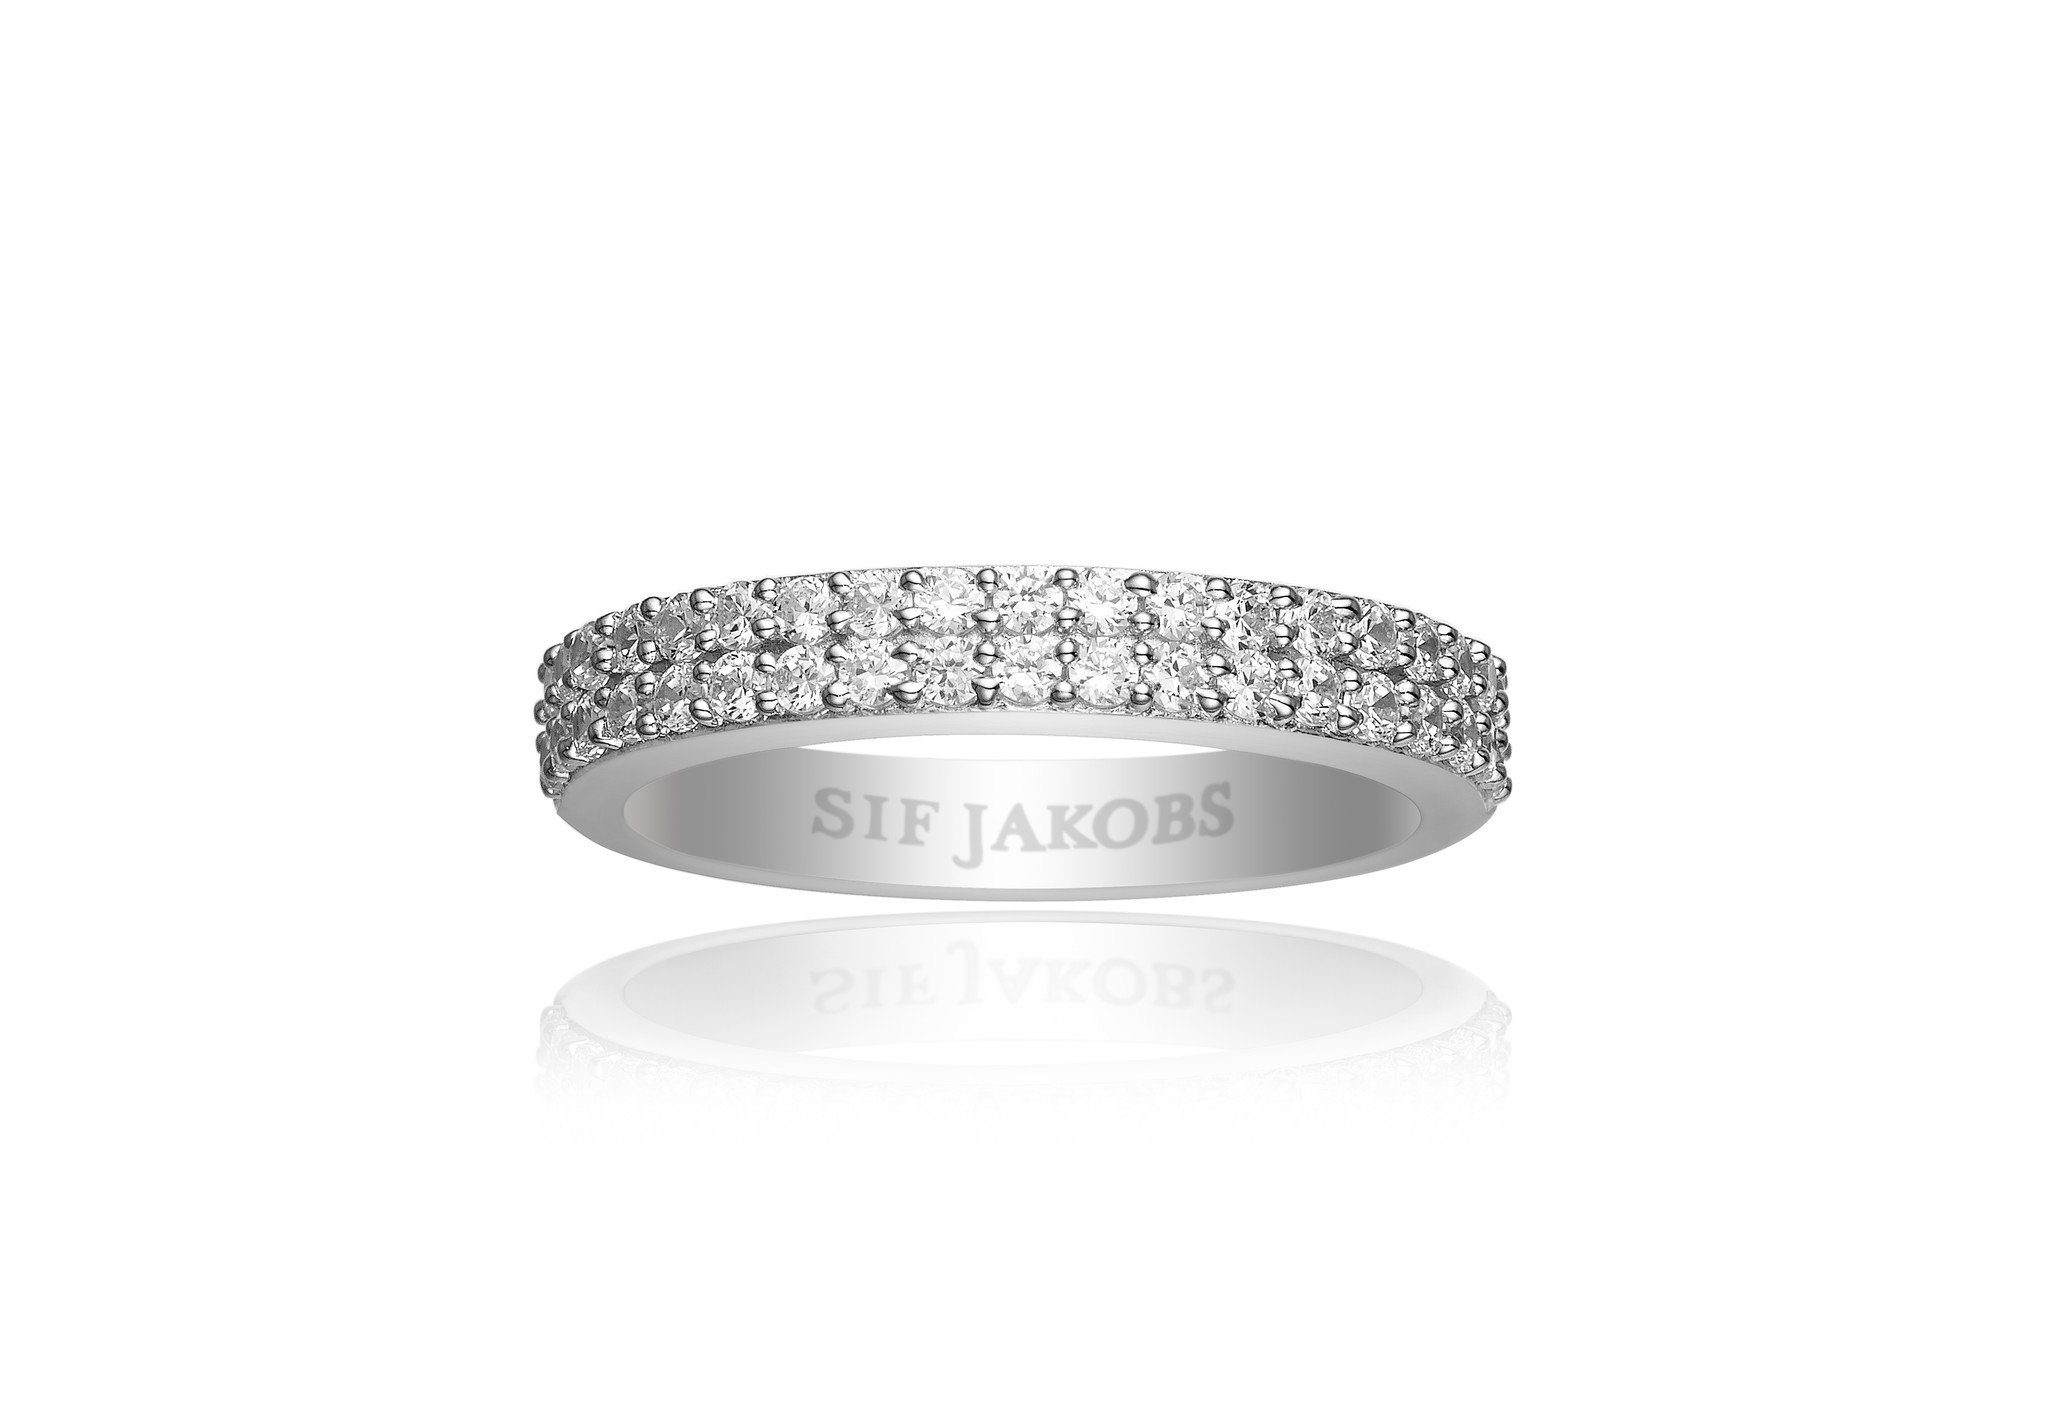 Jewellery WEISSEN MIT Sif mit Fingerring Zirkonien 50% DUE (56), RING ZIRKONIA CORTE Jakobs